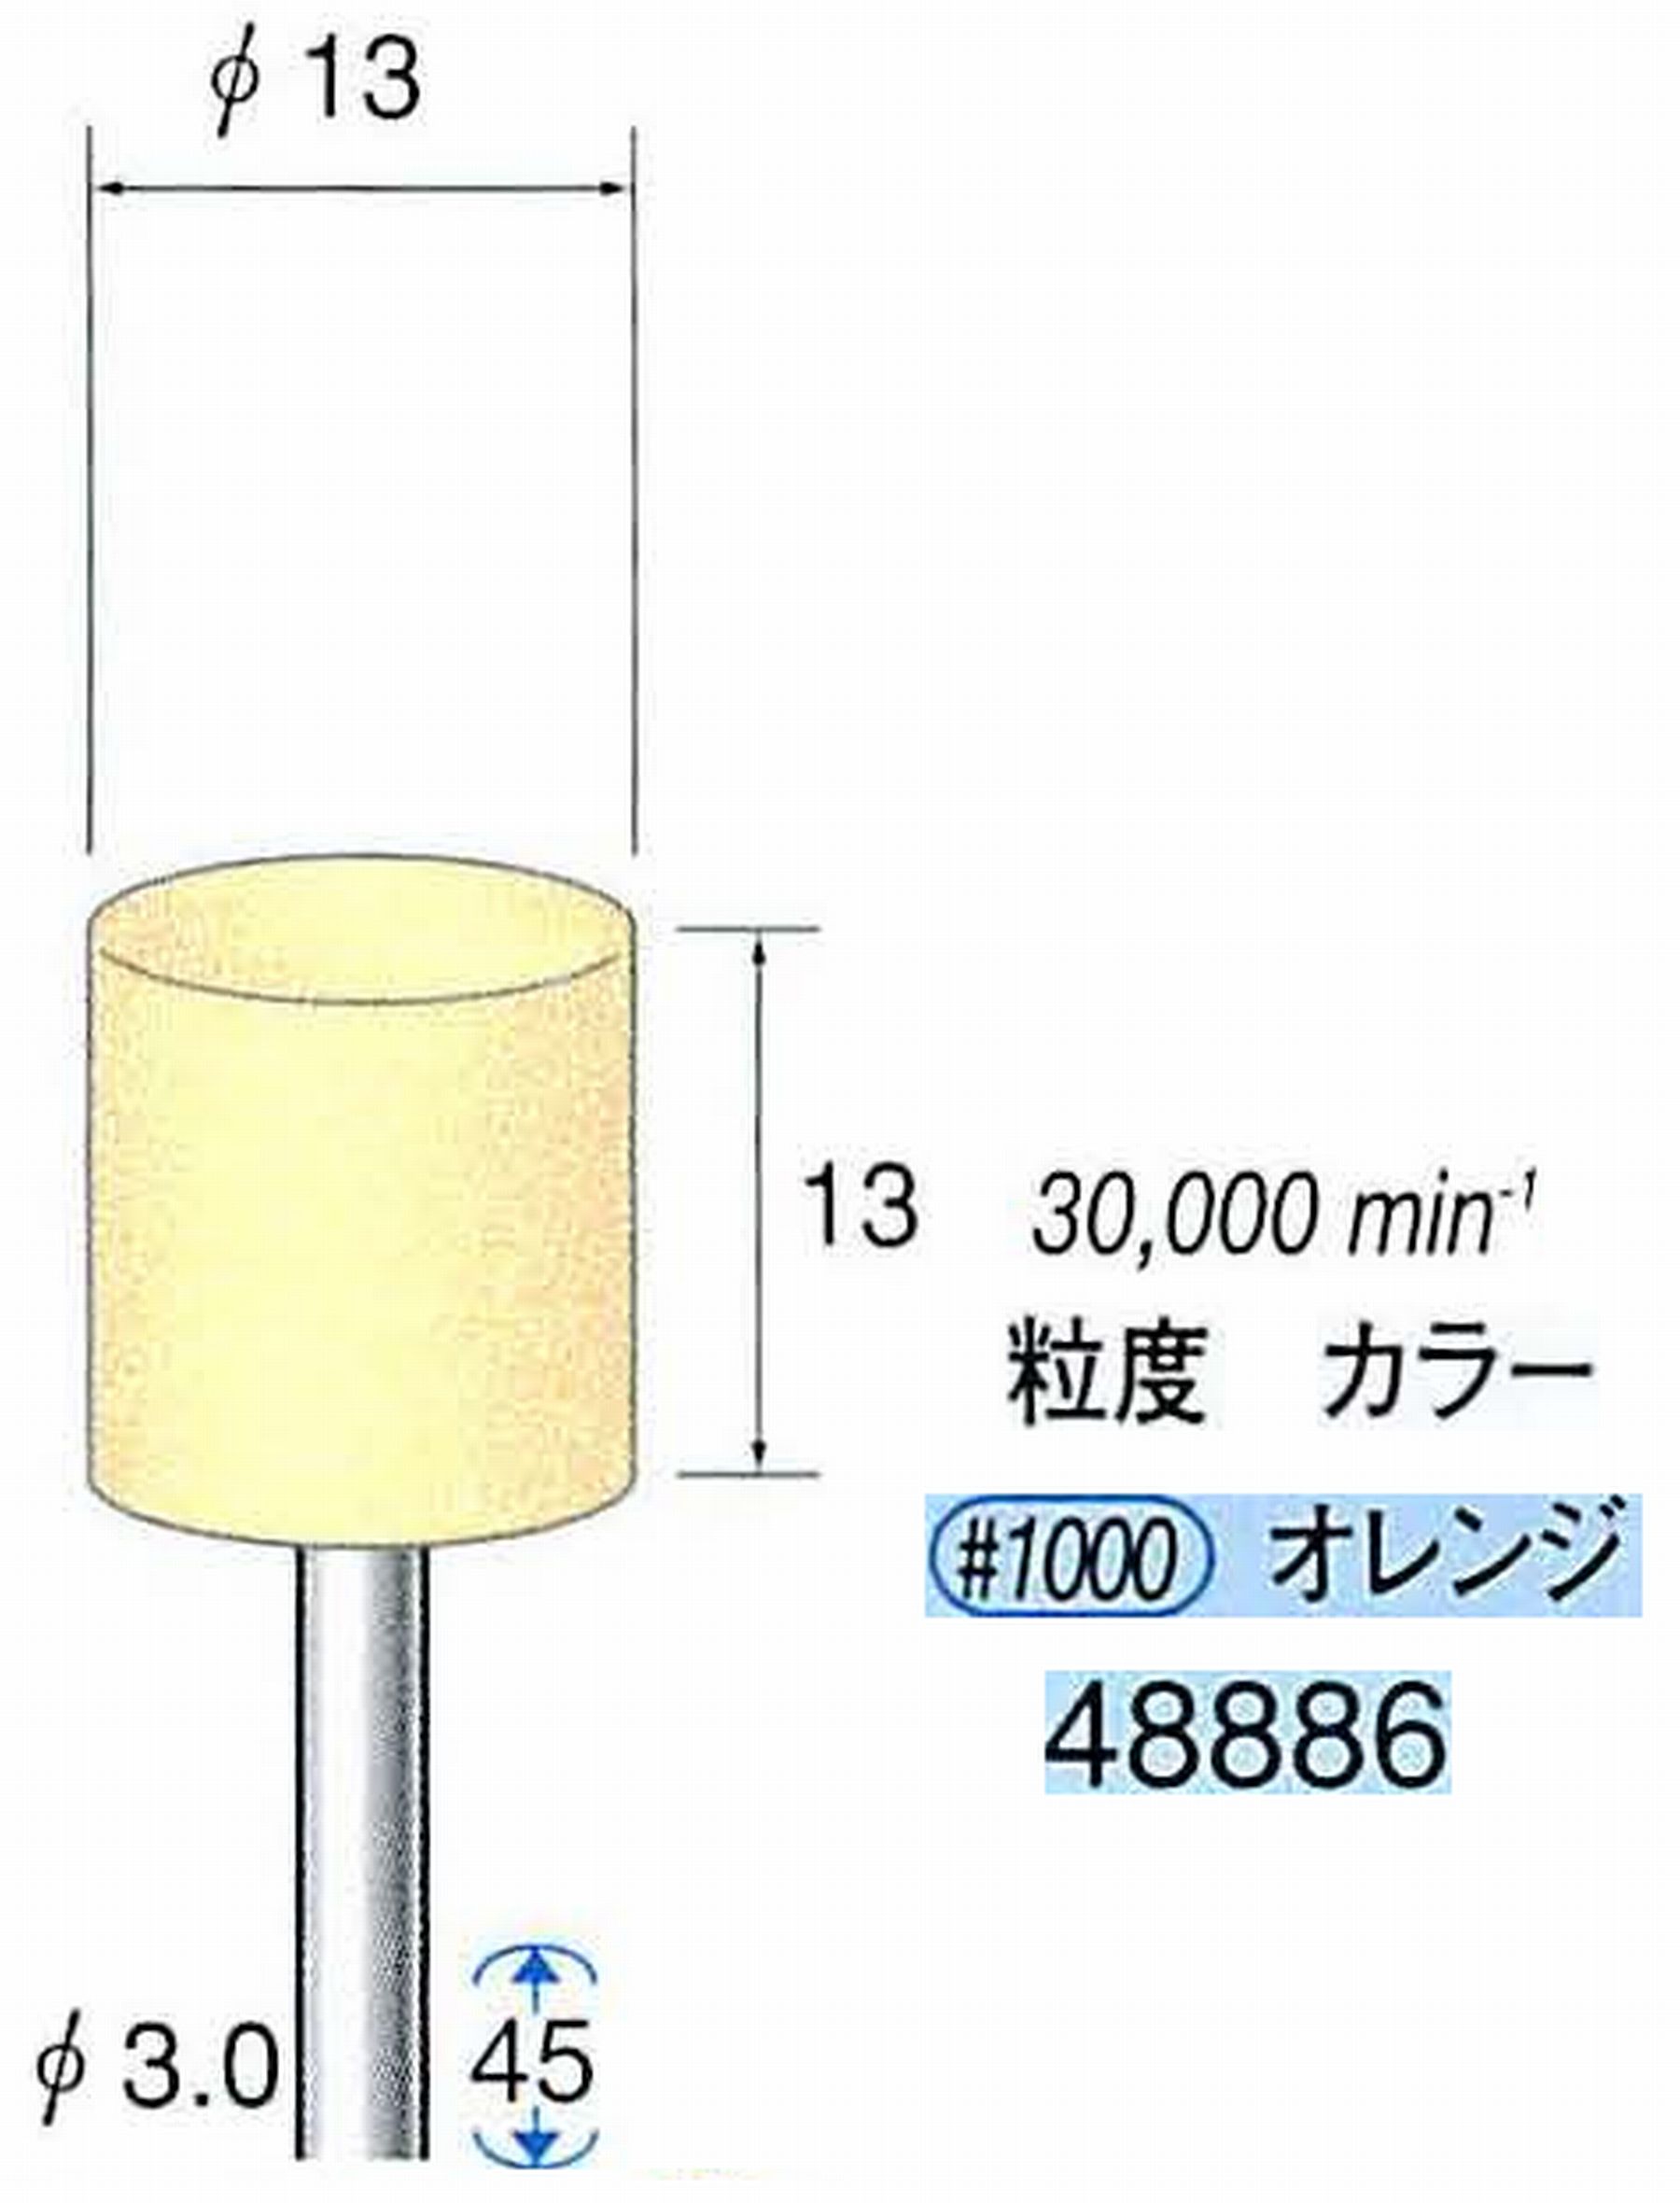 ナカニシ/NAKANISHI ポリッシュサンダー 軸径(シャンク)φ3.0mm 48886